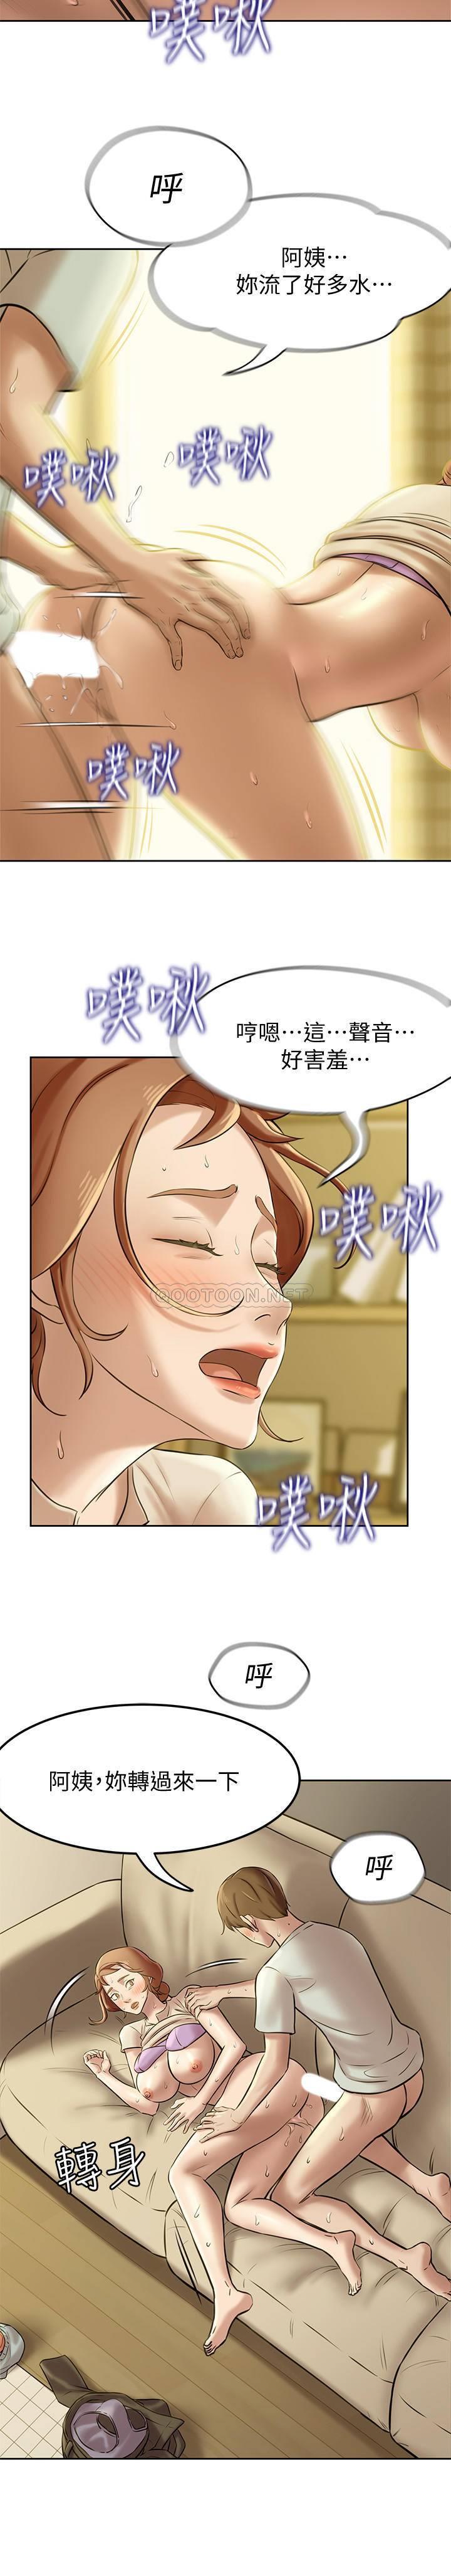 韩国污漫画 小褲褲筆記 第7话 - 阿姨，给我看看你的脸 16